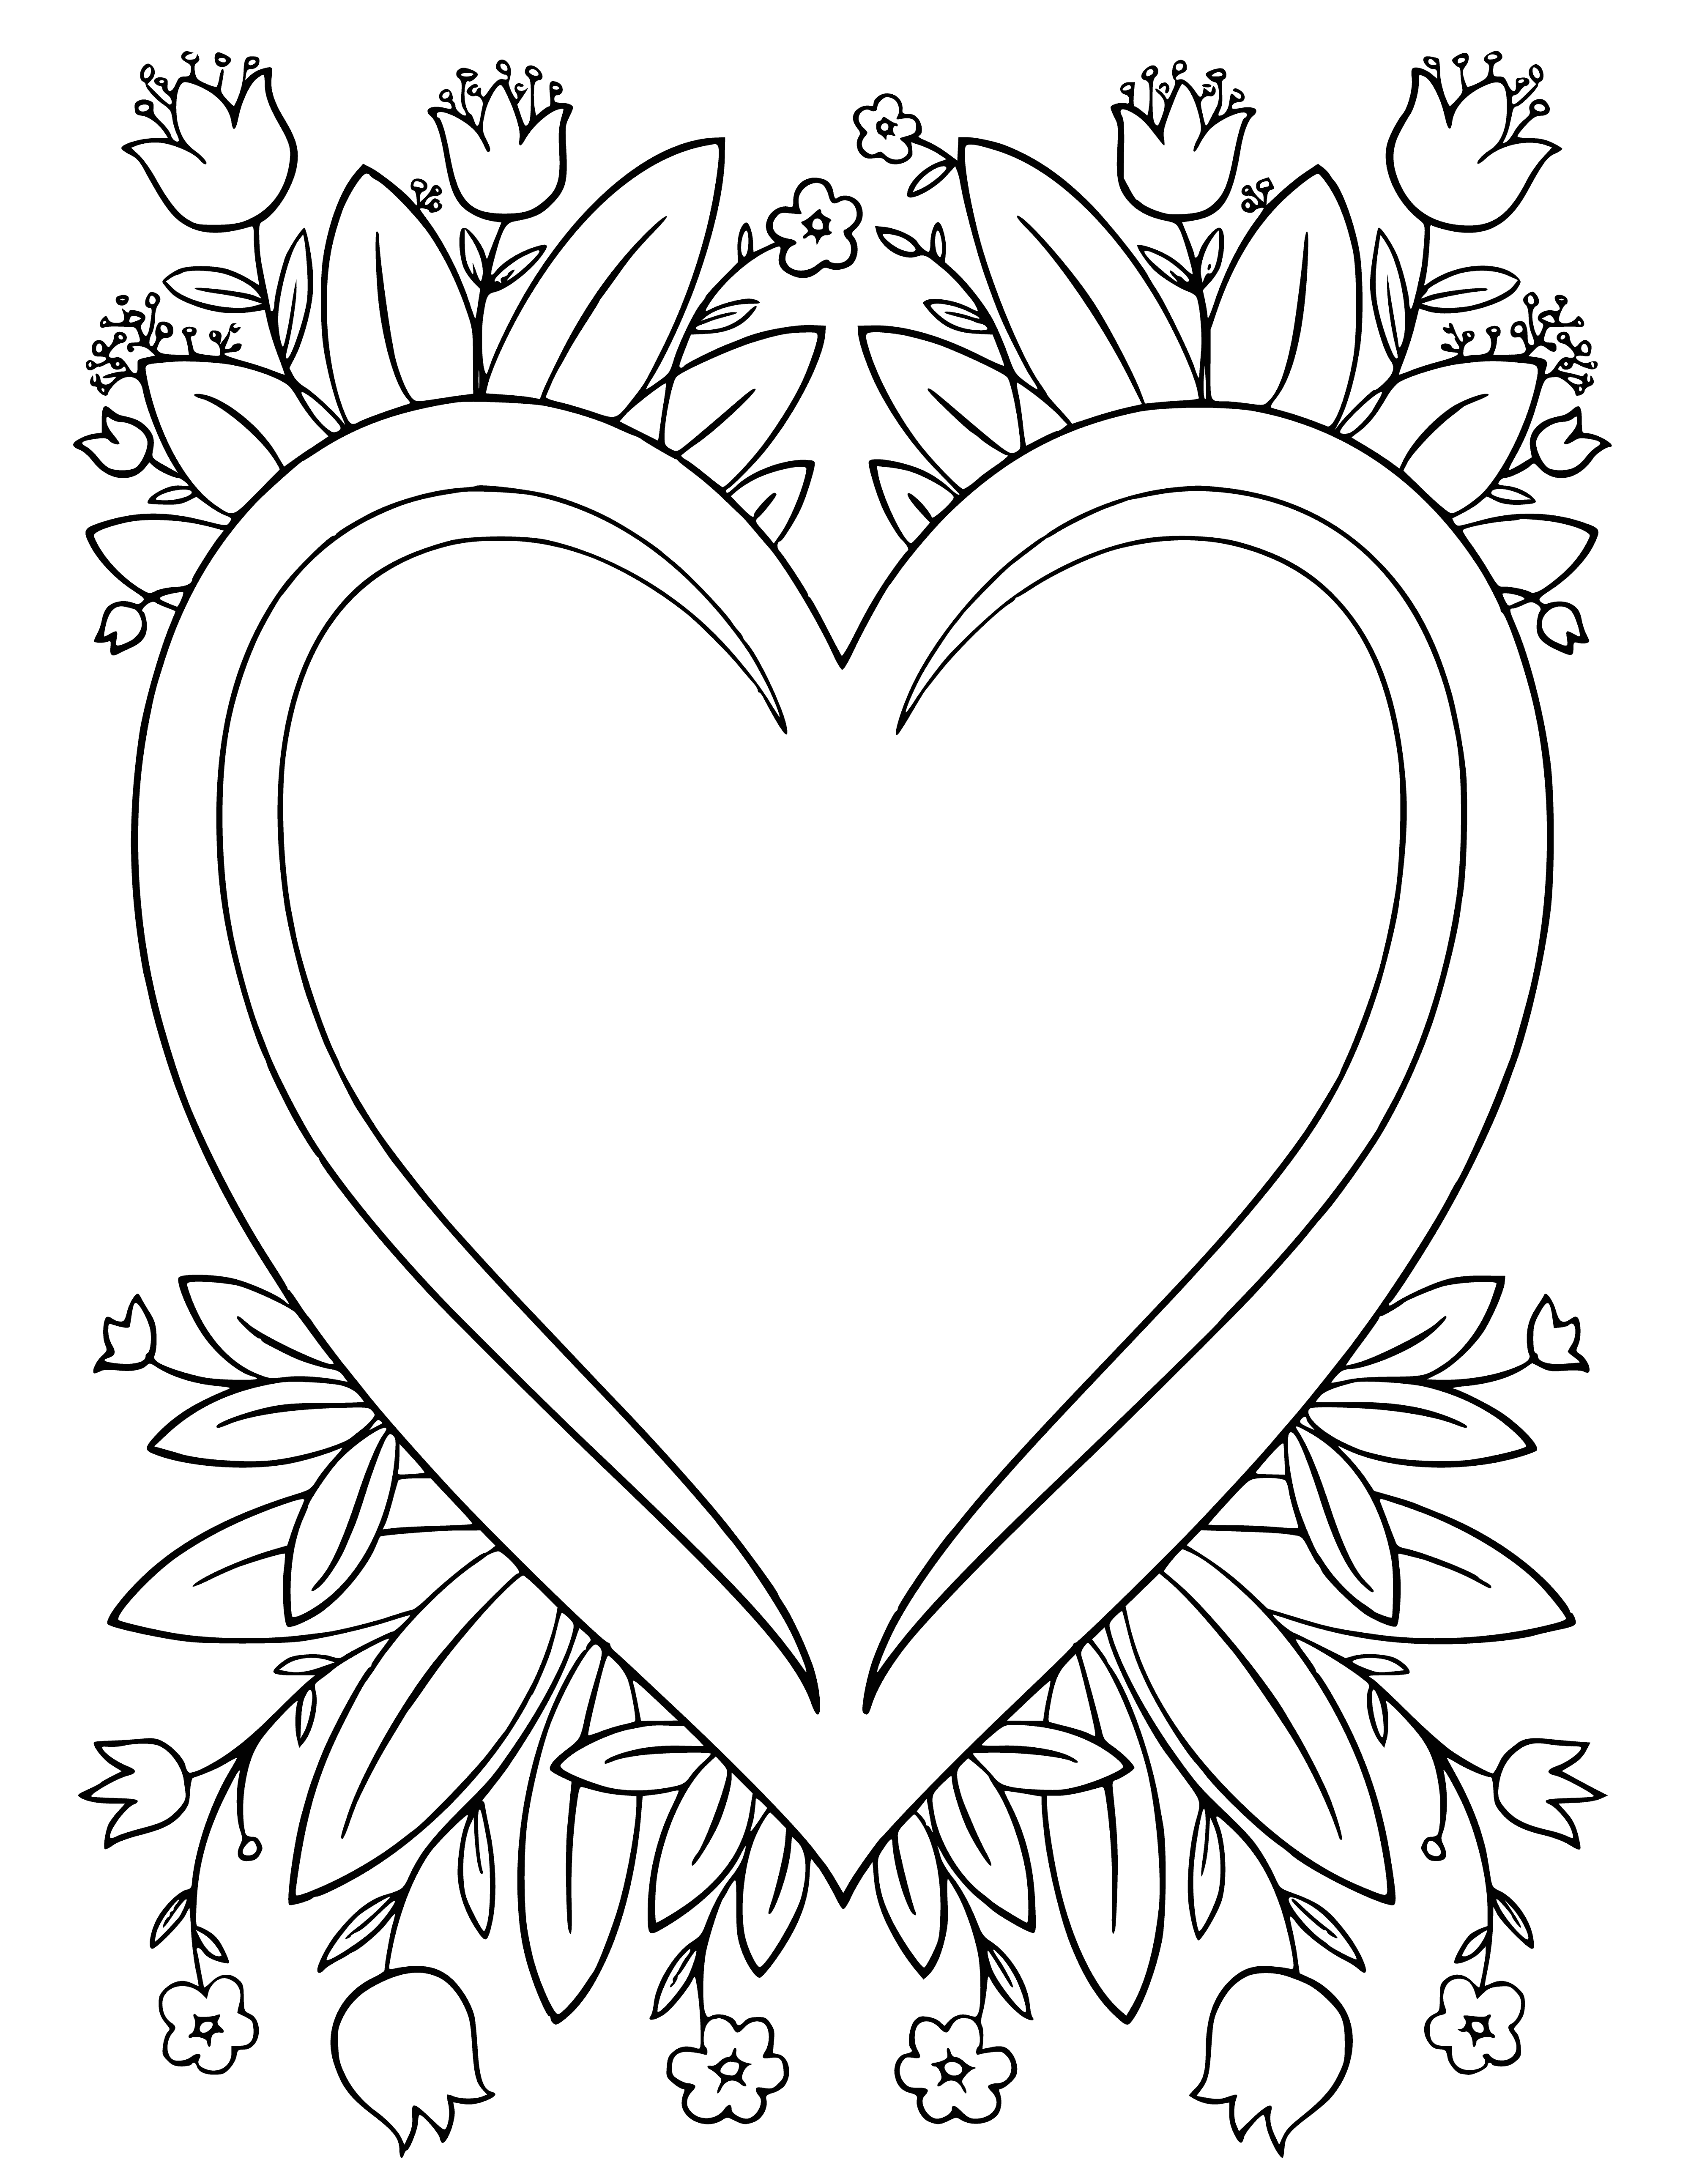 القلب والزهور صفحة التلوين